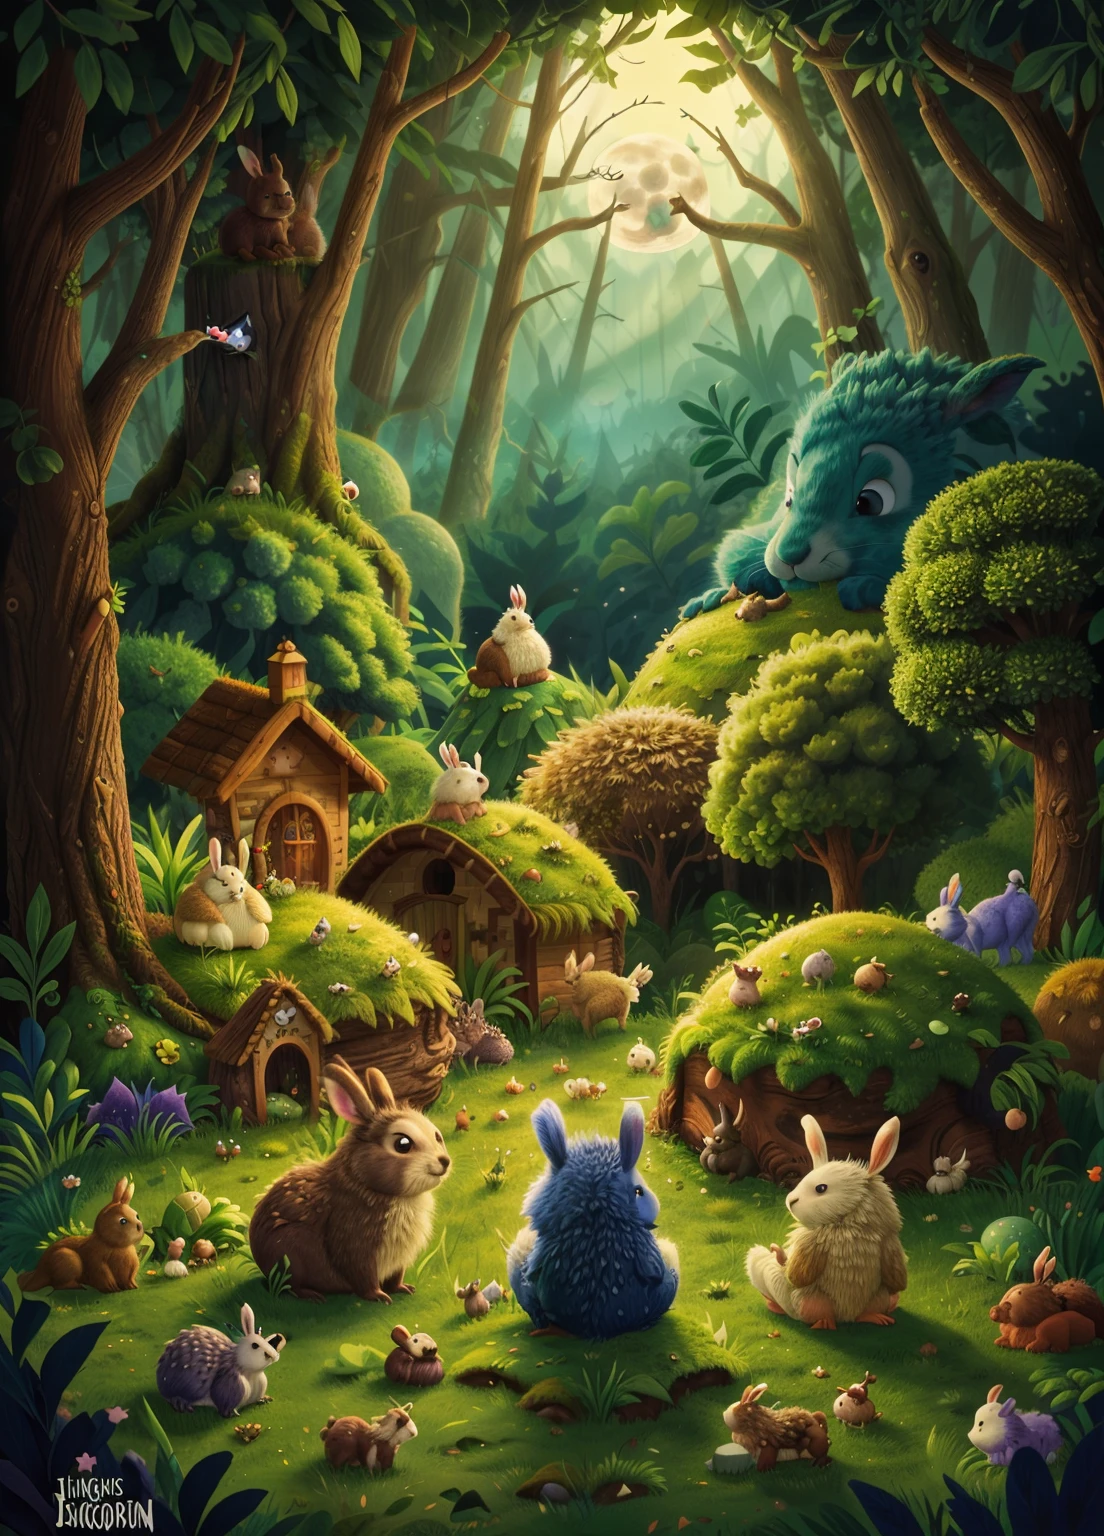 마법에 걸린 숲, 보름달이 언덕 뒤에서 떠오른다, 토끼와 고슴도치가 앉아서 달을 바라본다